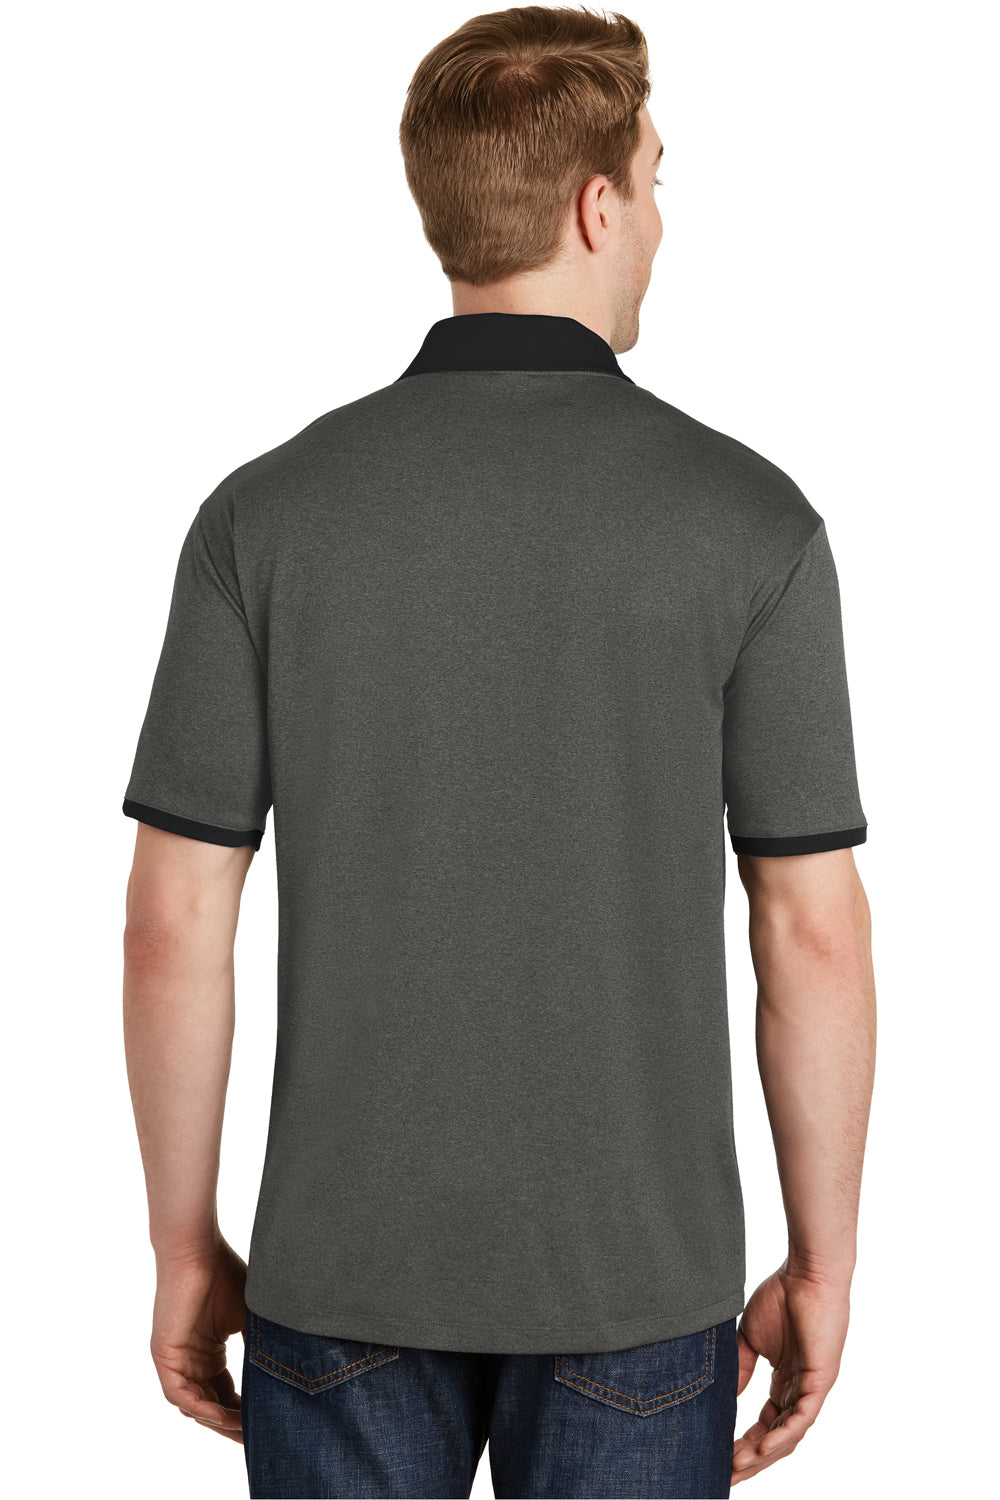 Sport-Tek ST667 Mens Heather Contender Moisture Wicking Short Sleeve Polo Shirt Graphite Grey/Black Back